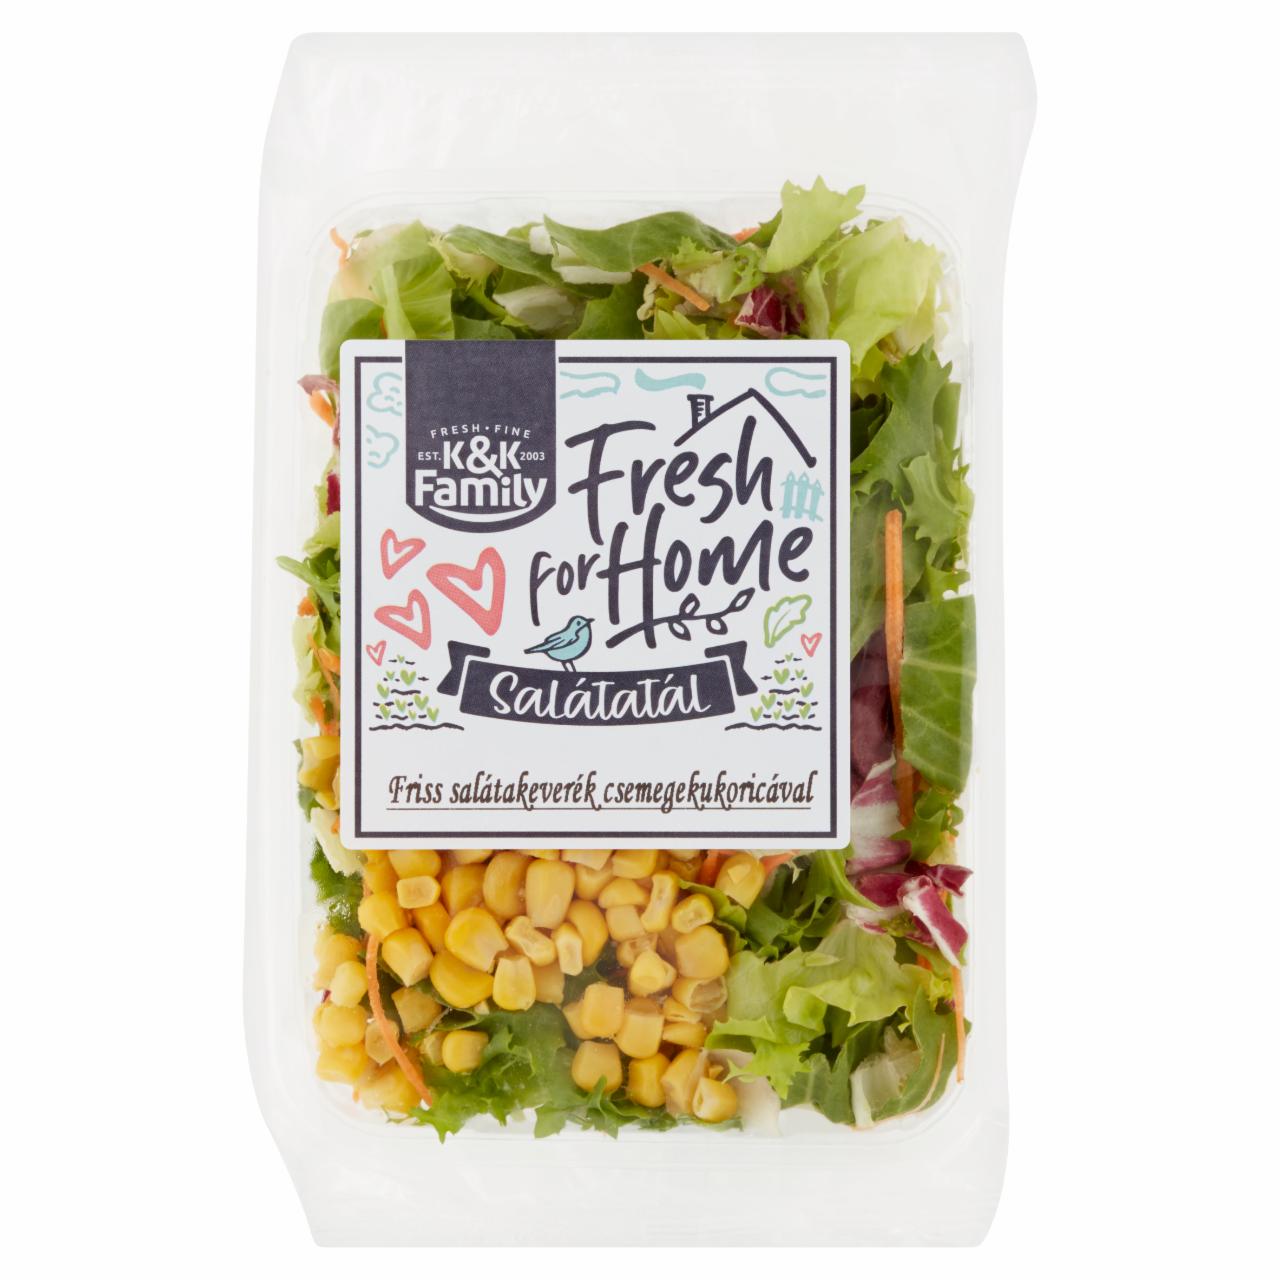 Képek - K&K Family Fresh for Home Salátatál friss salátakeverék csemegekukoricával 115 g